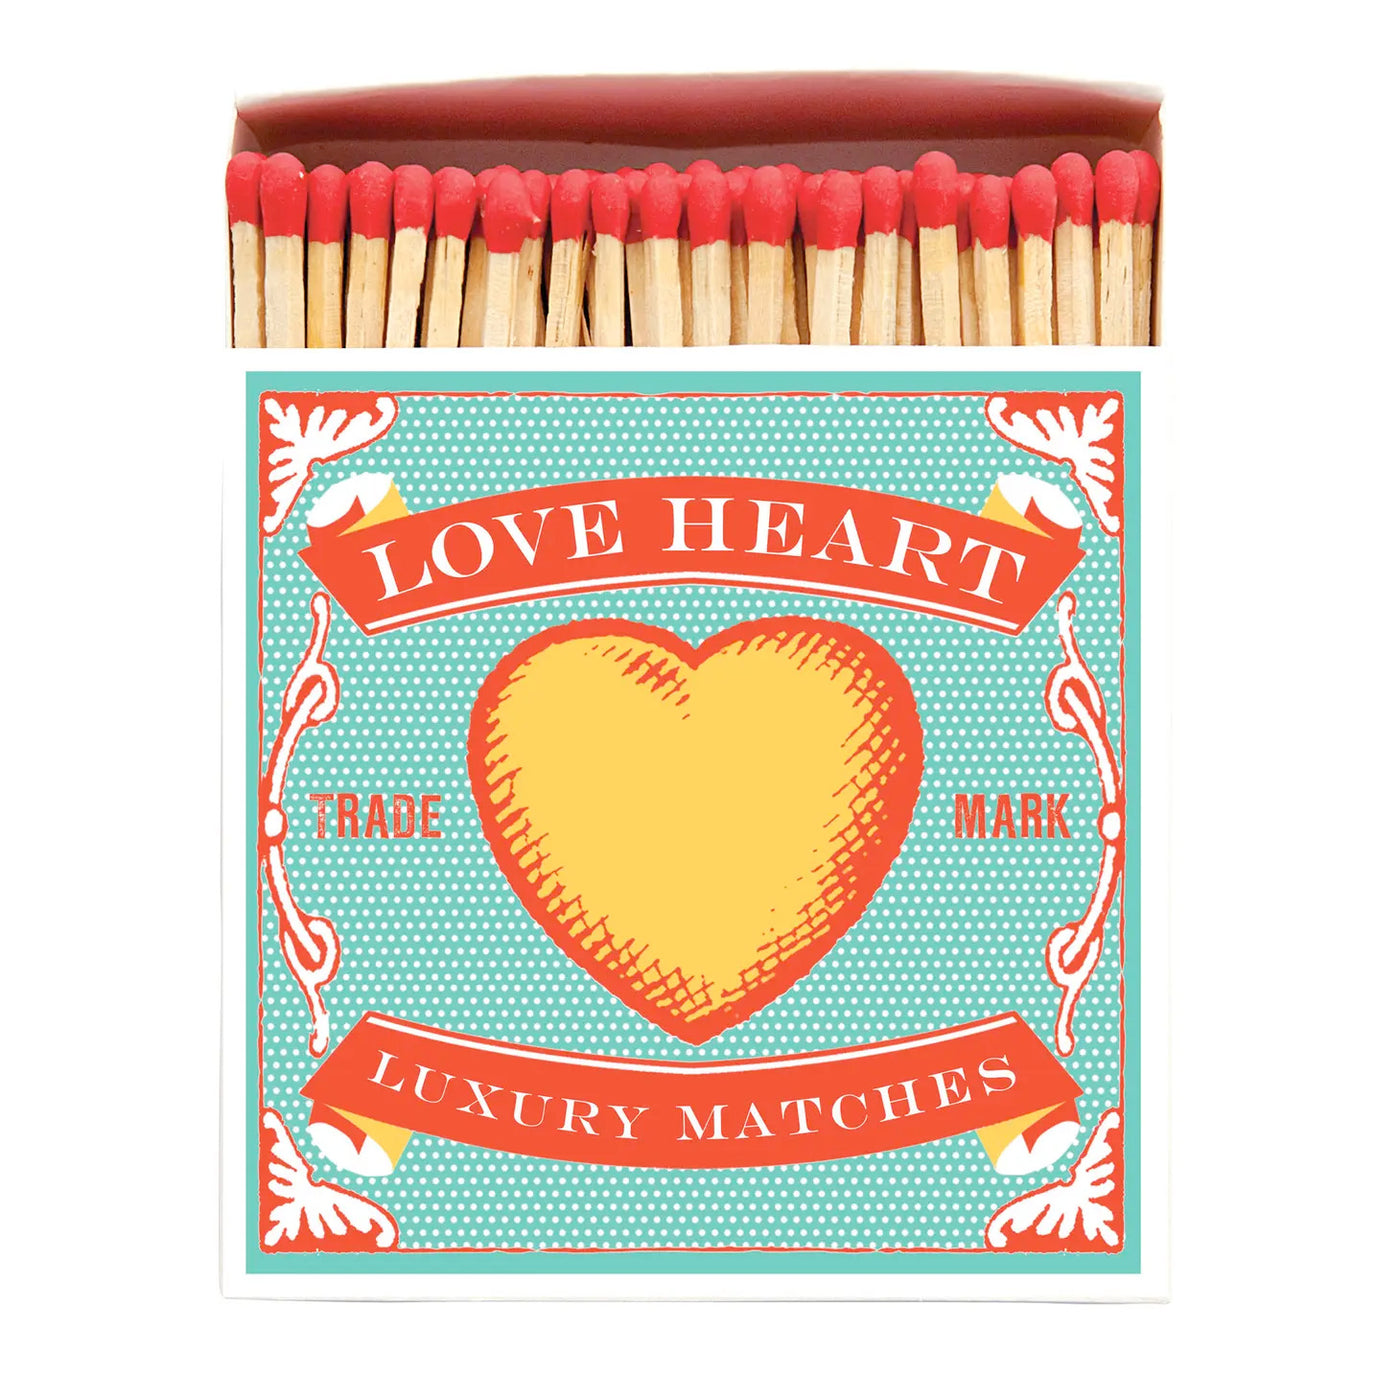 Love Heart Matches